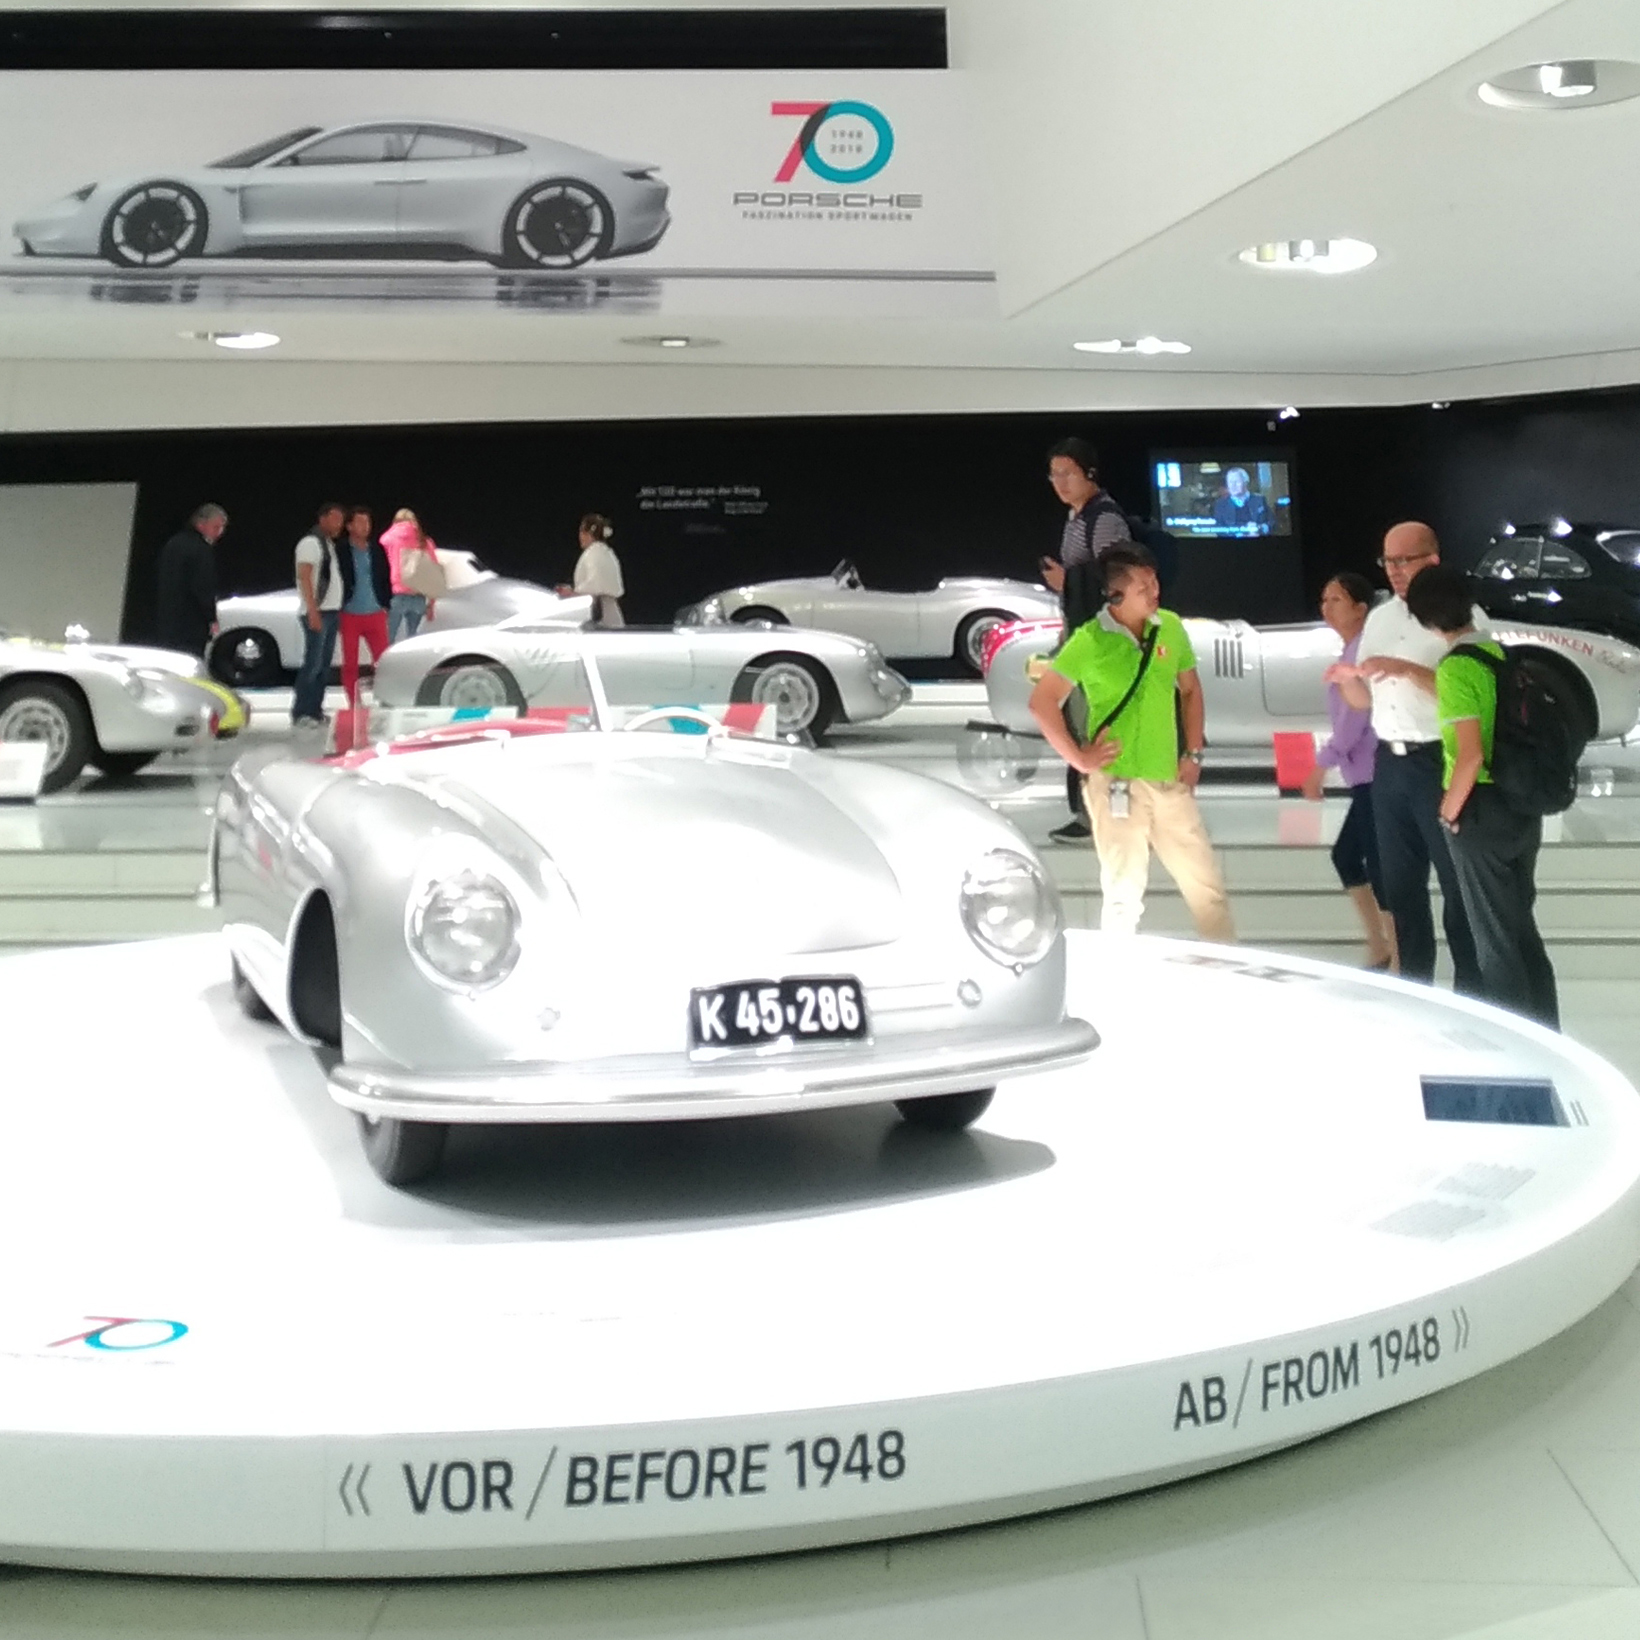 Επίσκεψη στο Μουσείο Porsche